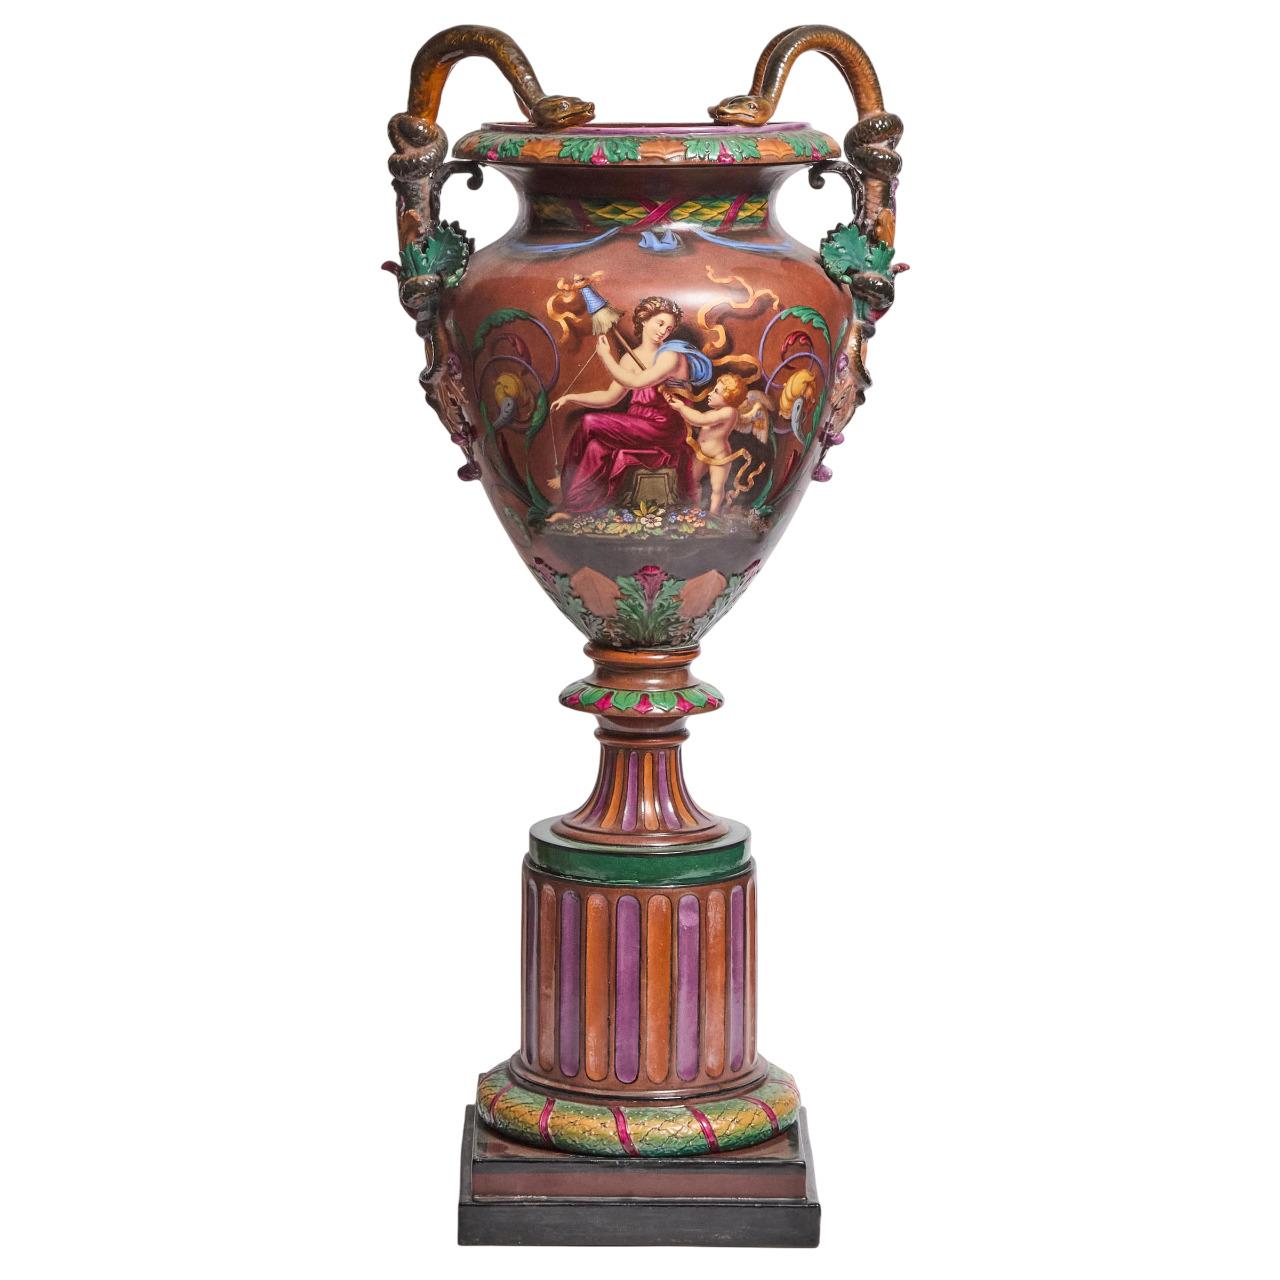 Ce vase ou urne d'exposition antique en majolique a sans doute été fabriqué par la manufacture Royal Worcester dans le style Baroque Revival, vers 1864. La pièce est estampillée de la couronne Royal Worcester à trois reprises à la base, et elle est